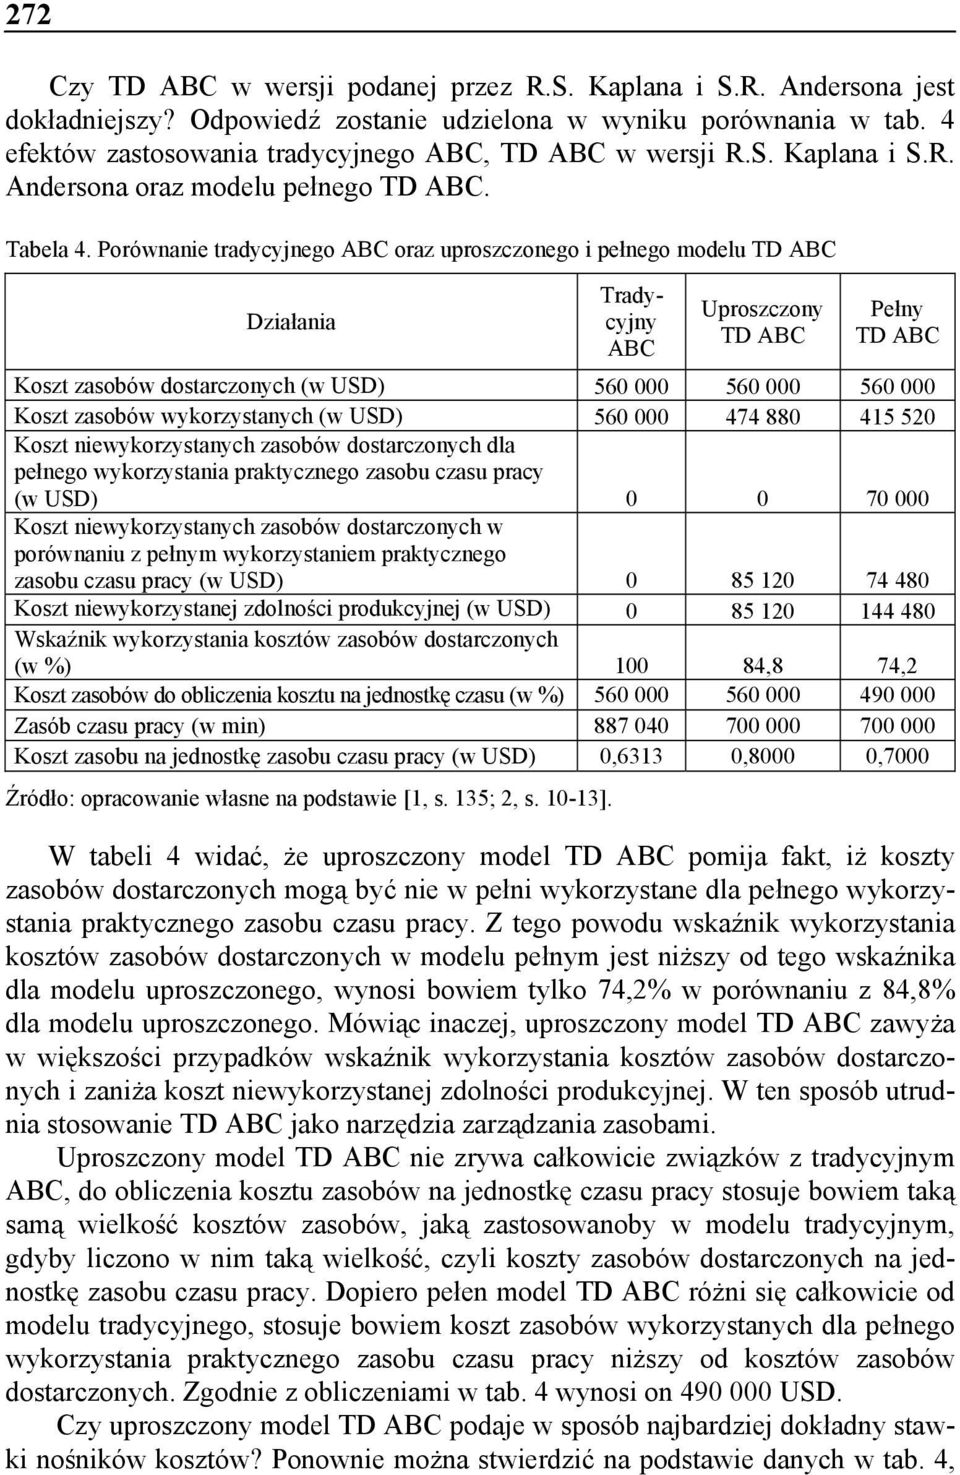 Porównanie tradycyjnego ABC oraz uproszczonego i pełnego modelu TD ABC Działania Tradycyjny ABC Uproszczony TD ABC Pełny TD ABC Koszt zasobów dostarczonych (w USD) 560 000 560 000 560 000 Koszt